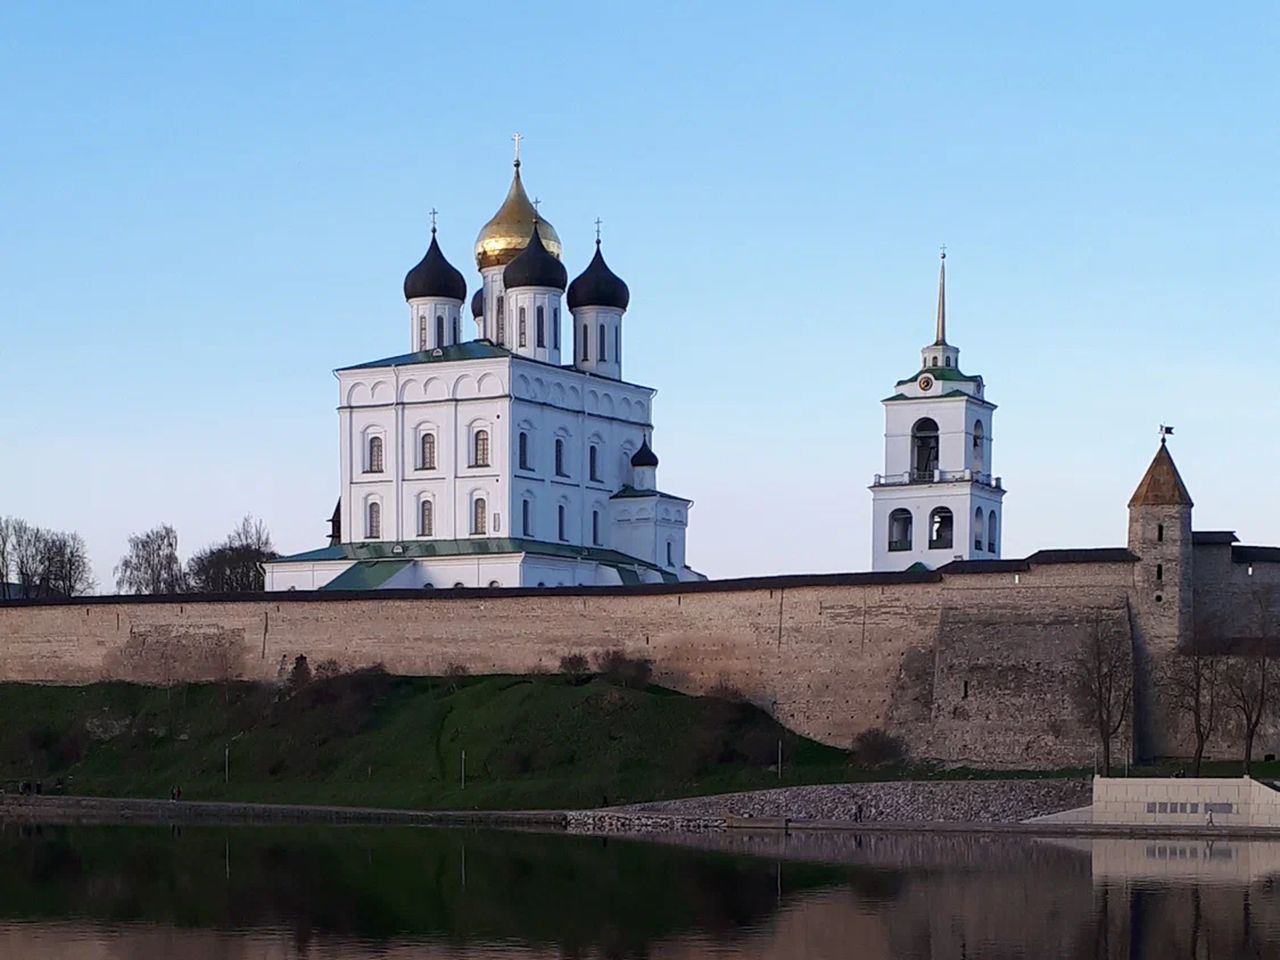 Пешком по историческому центру Пскова (с Кремлём) | Цена 5250₽, отзывы, описание экскурсии